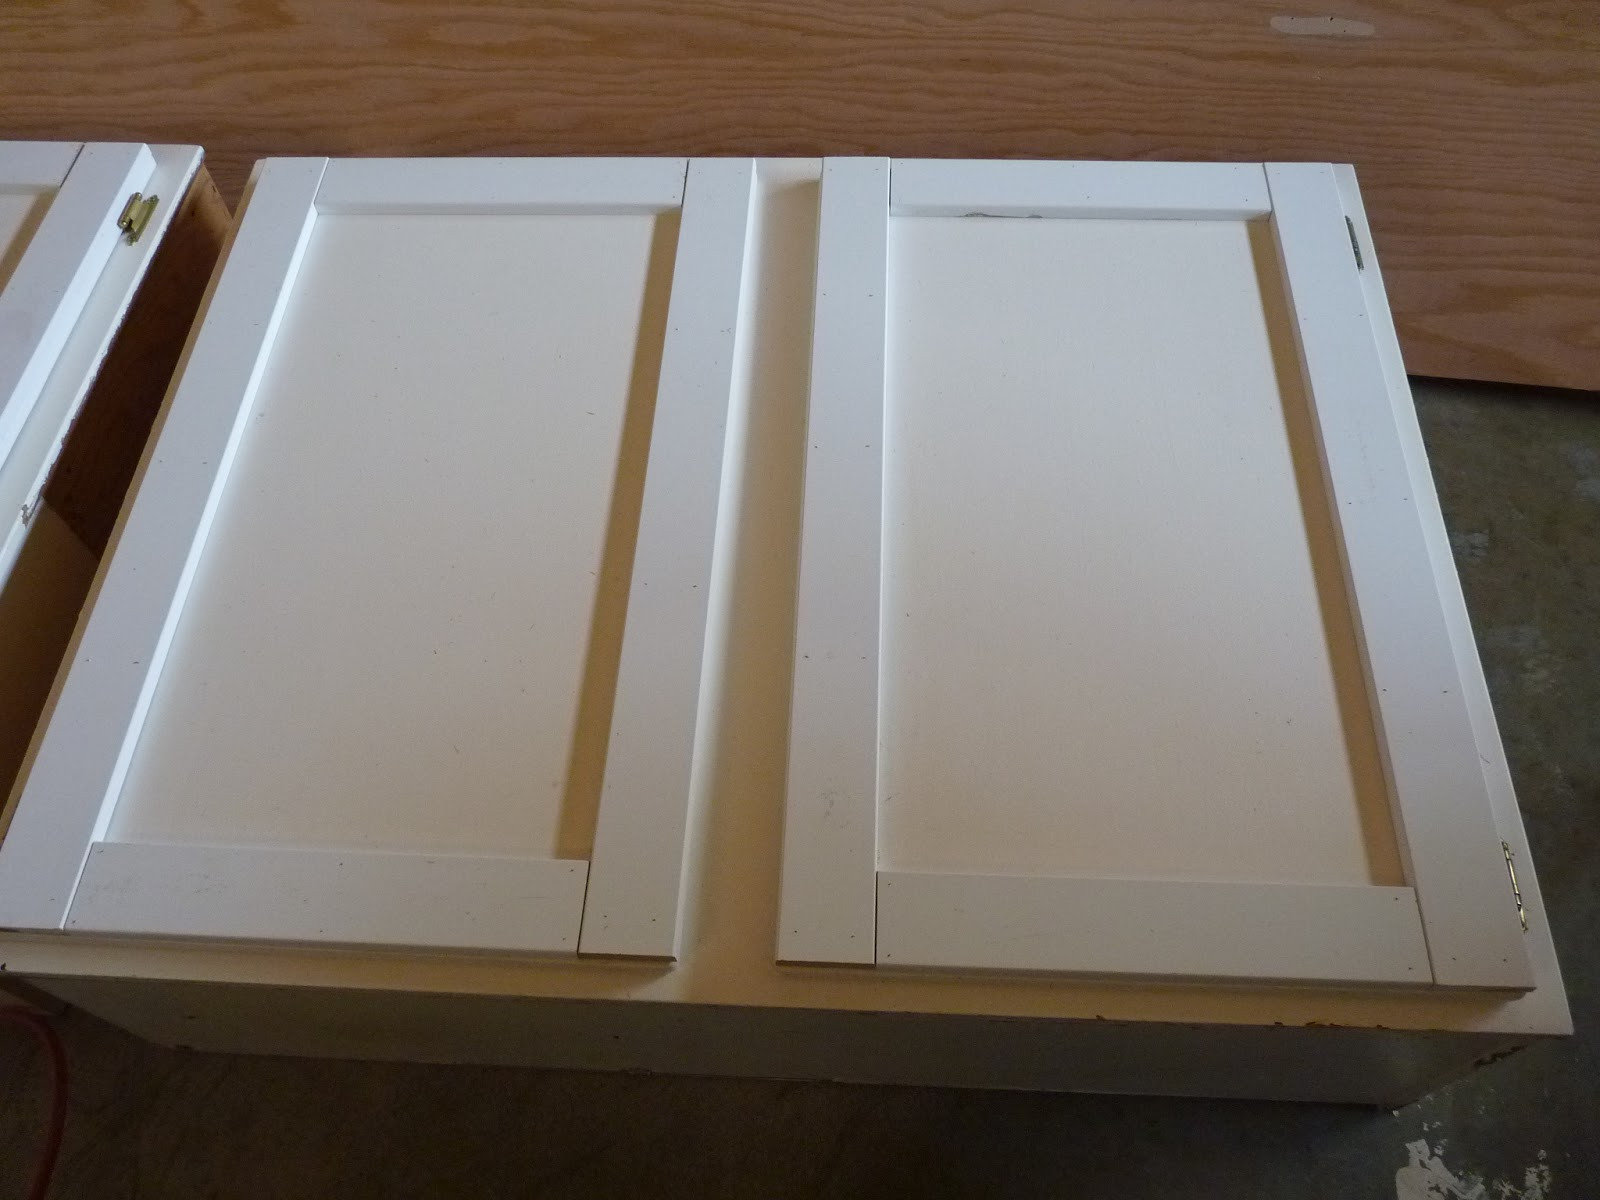 Best ideas about DIY Shaker Cabinet Doors
. Save or Pin d i y d e s i g n Upcycled Shaker Panel Cabinet Doors Now.